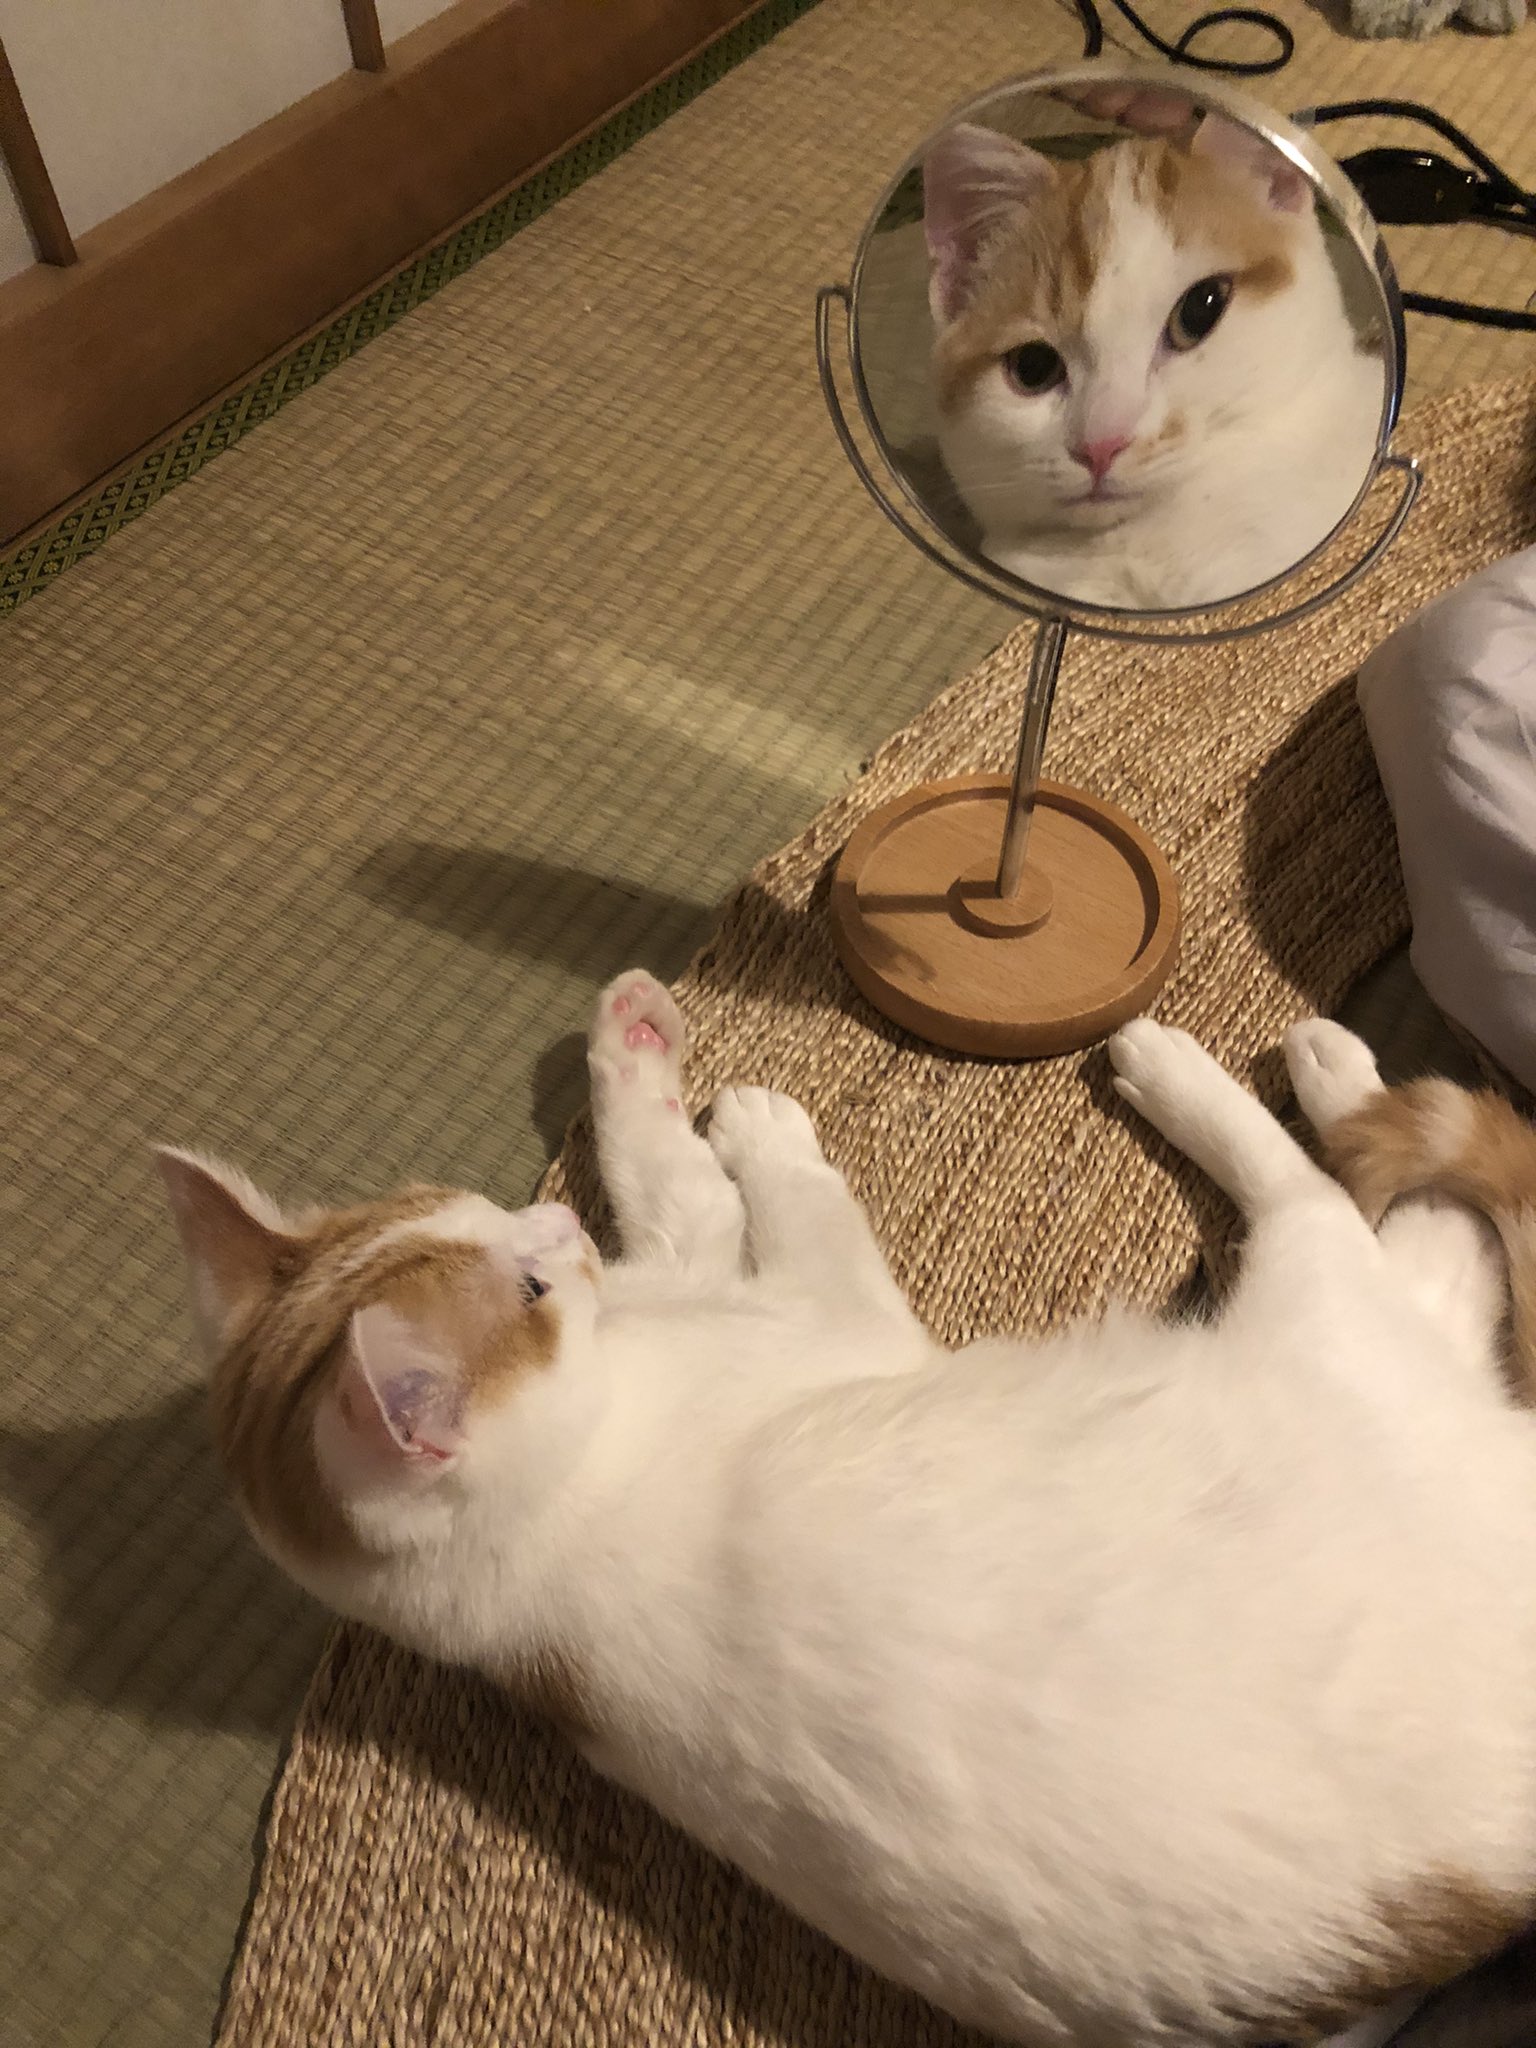 鏡越しにこちらをじっと観察する猫 笑